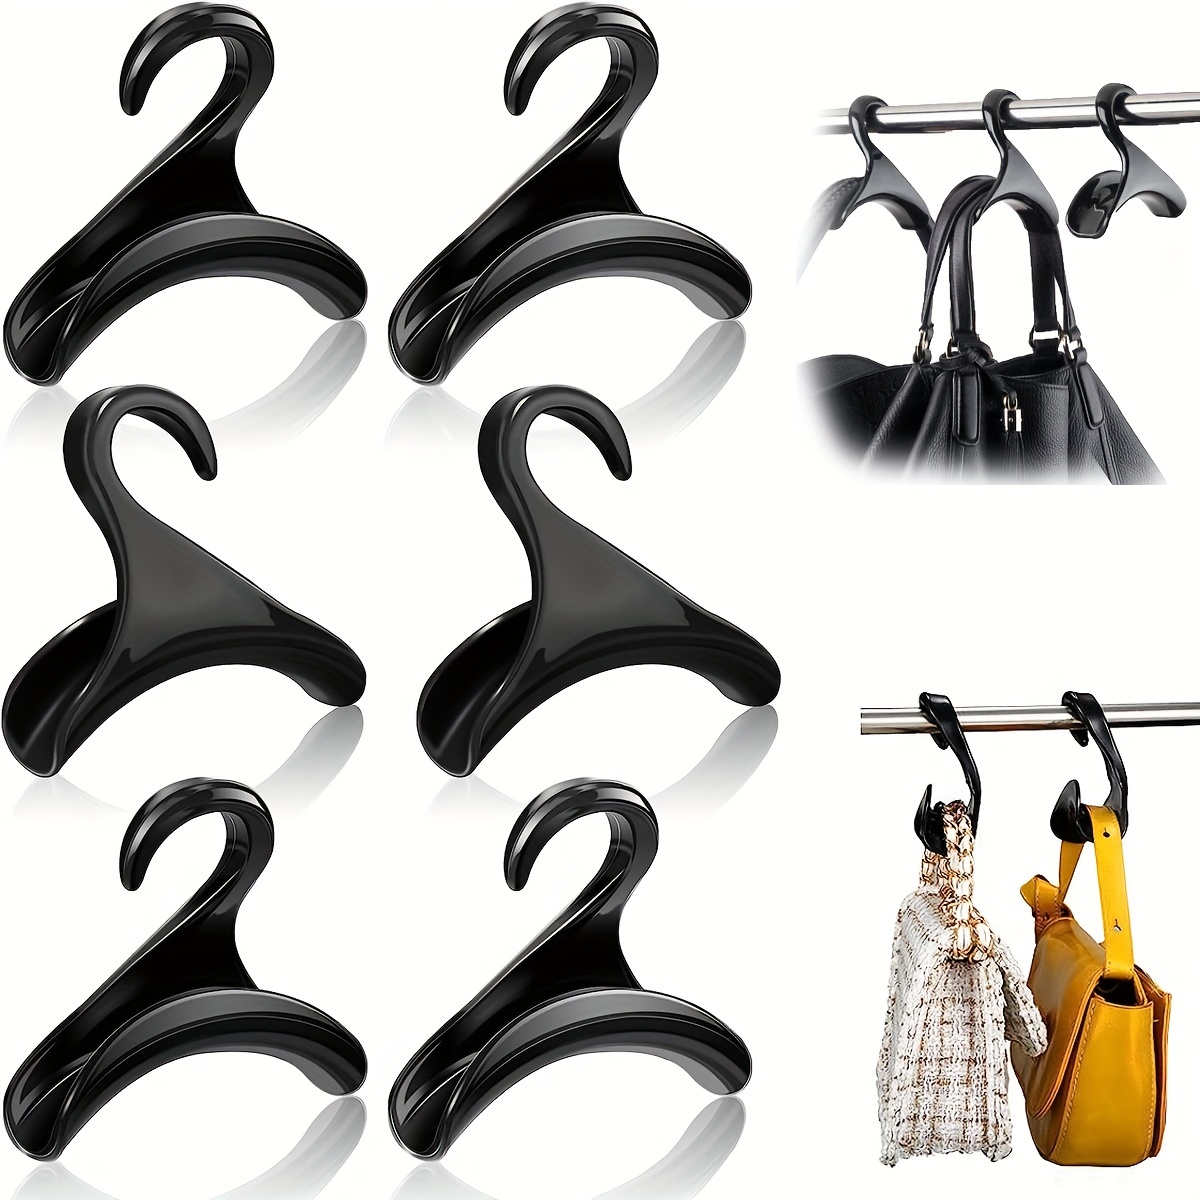 6pcs Arched Hanger Hook, Bag Handbag Hanger Rack, For Wardrobe Closet  Hanging Storage, Backpack Satchel Purse Plastic Hook Holder (Black)